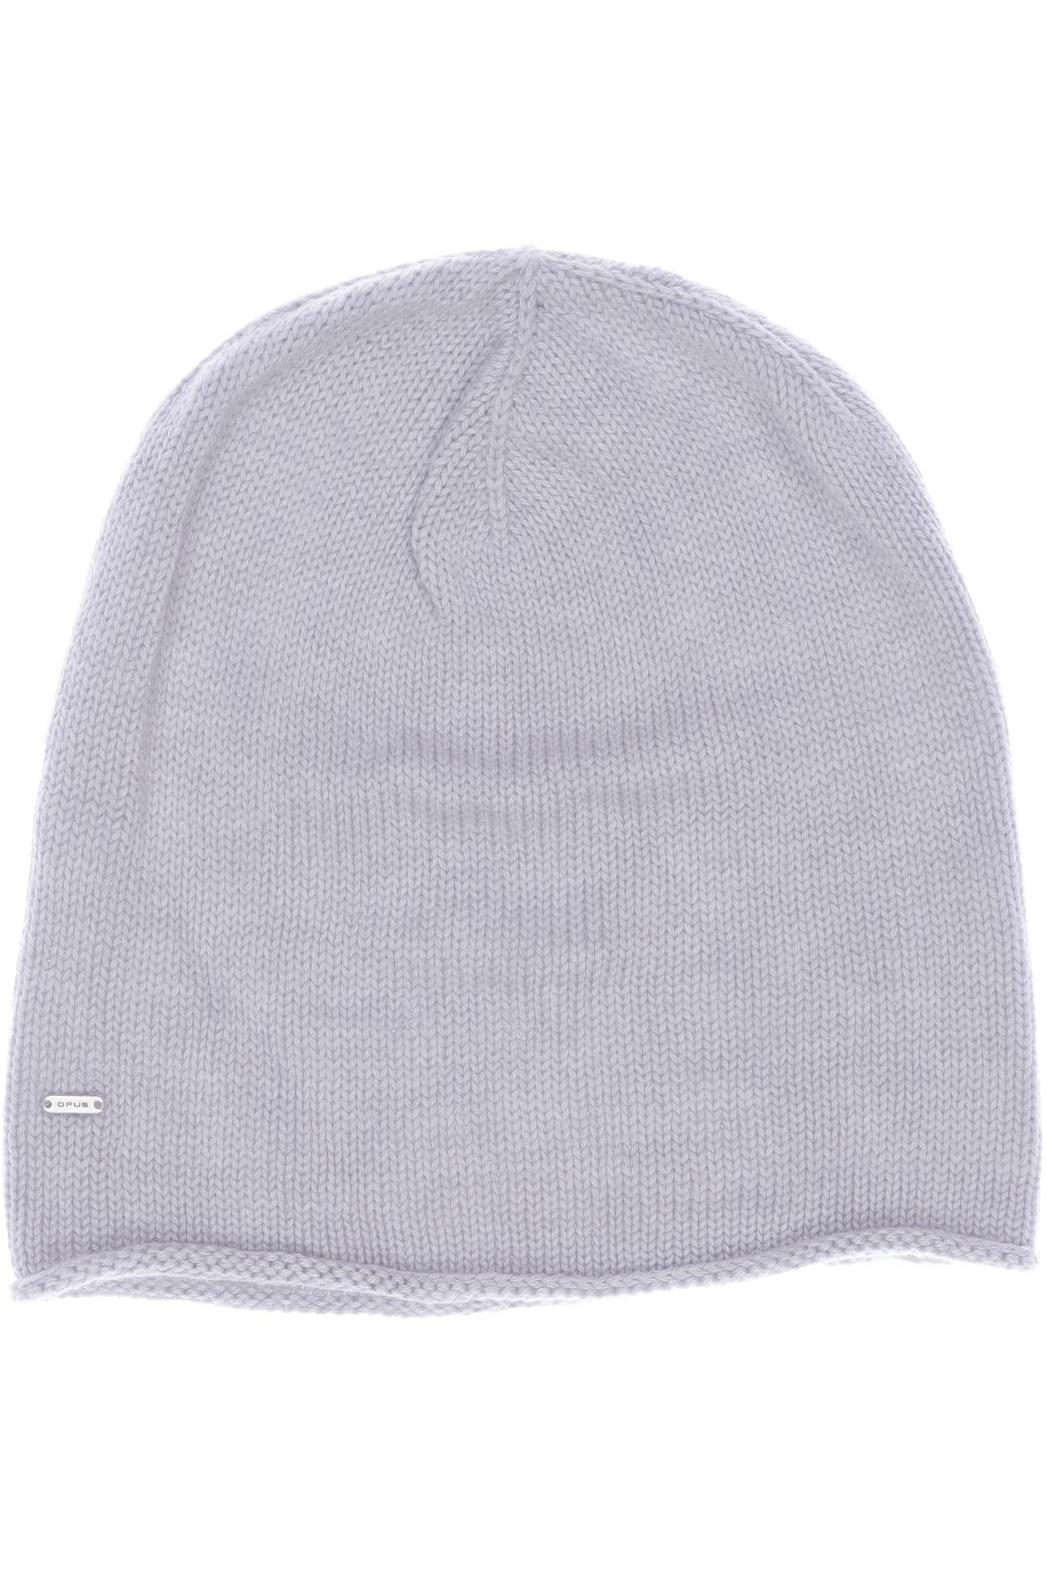 Opus Damen Hut/Mütze, grau von Opus